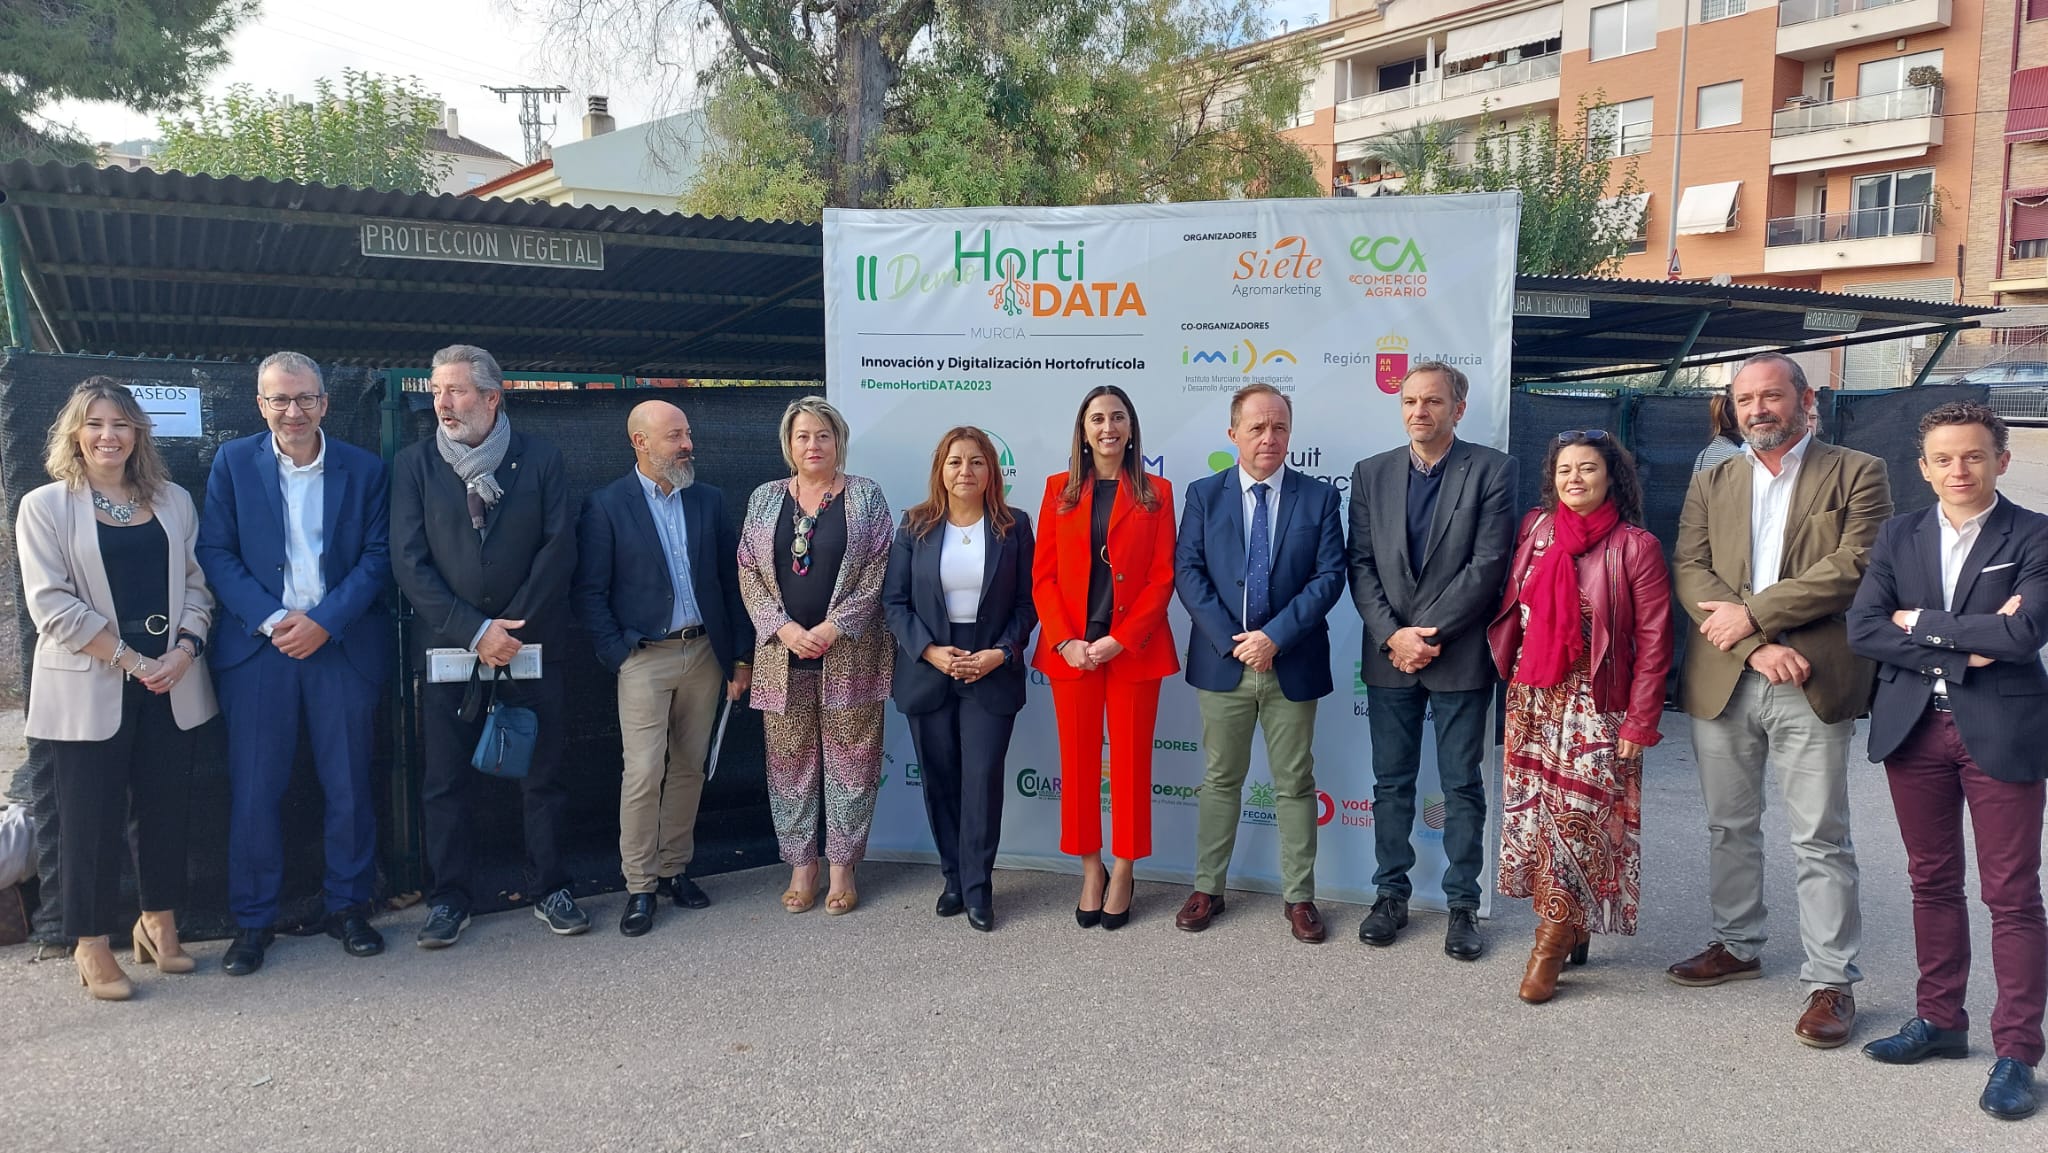 El Gobierno regional pone en valor la innovación y digitalización en la actividad hortofrutícola durante la Demo HortiDATA